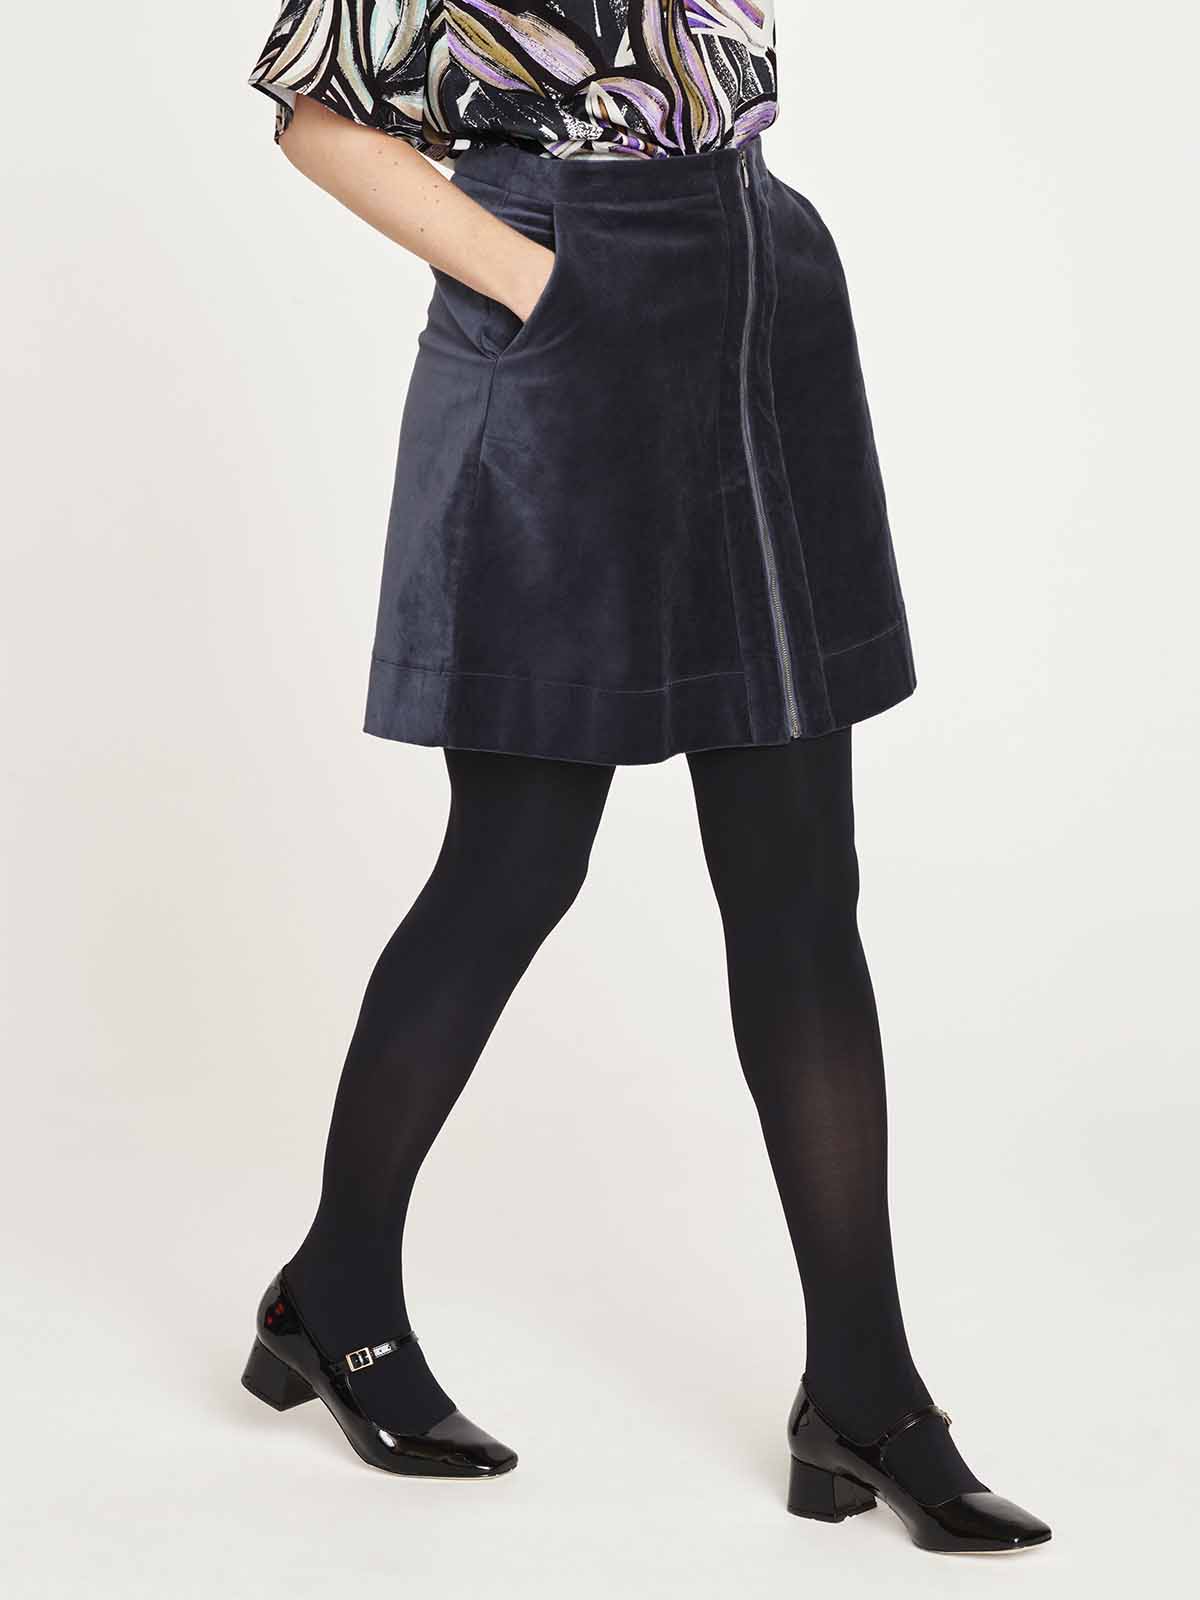 Aubrie Organic Cotton Velvet Skirt - Slate Blue